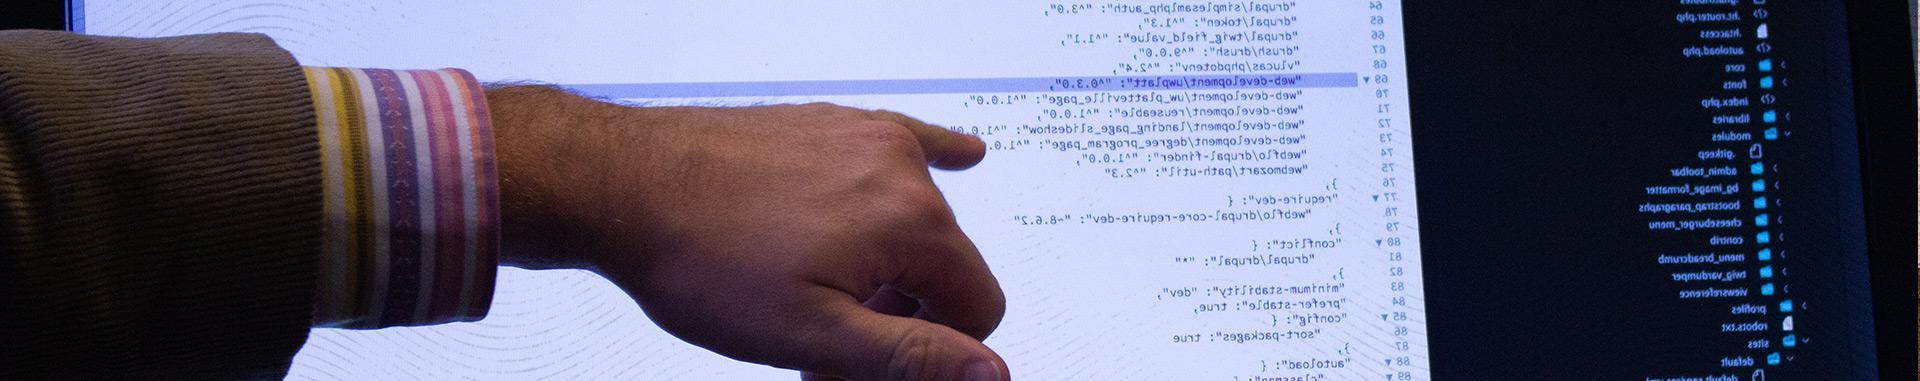 一名Vendi男性员工的手和前臂在电脑屏幕上指出特定的web开发代码